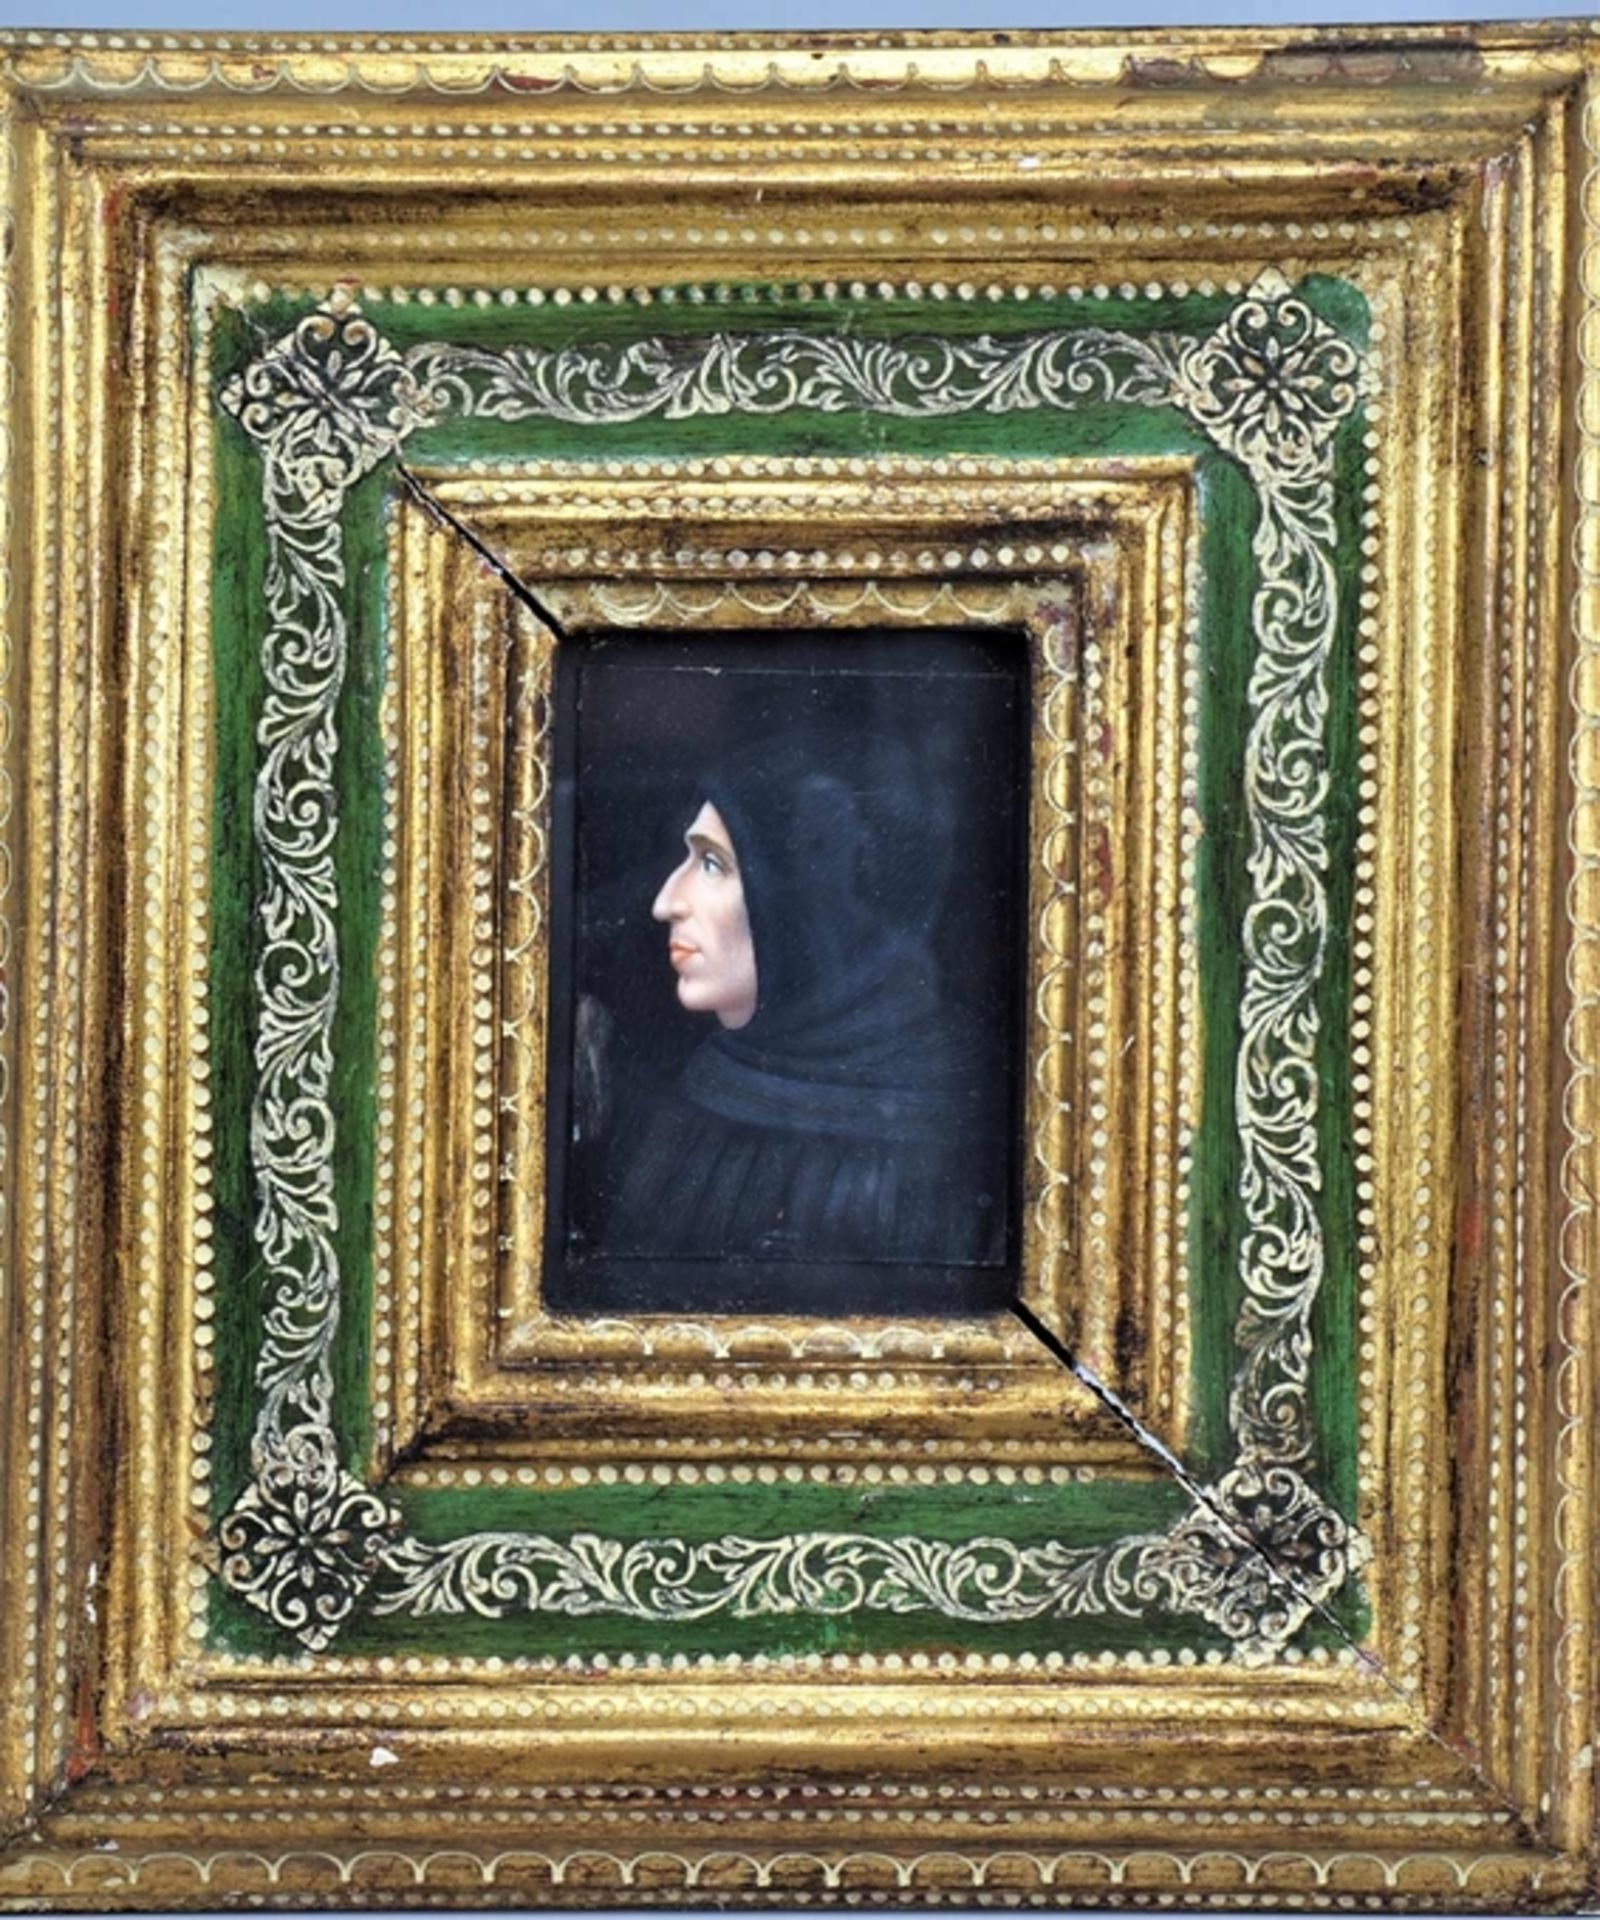 Miniatur Porträt von Girolamo Savonarola (1452 - 1498), 19. Jh.